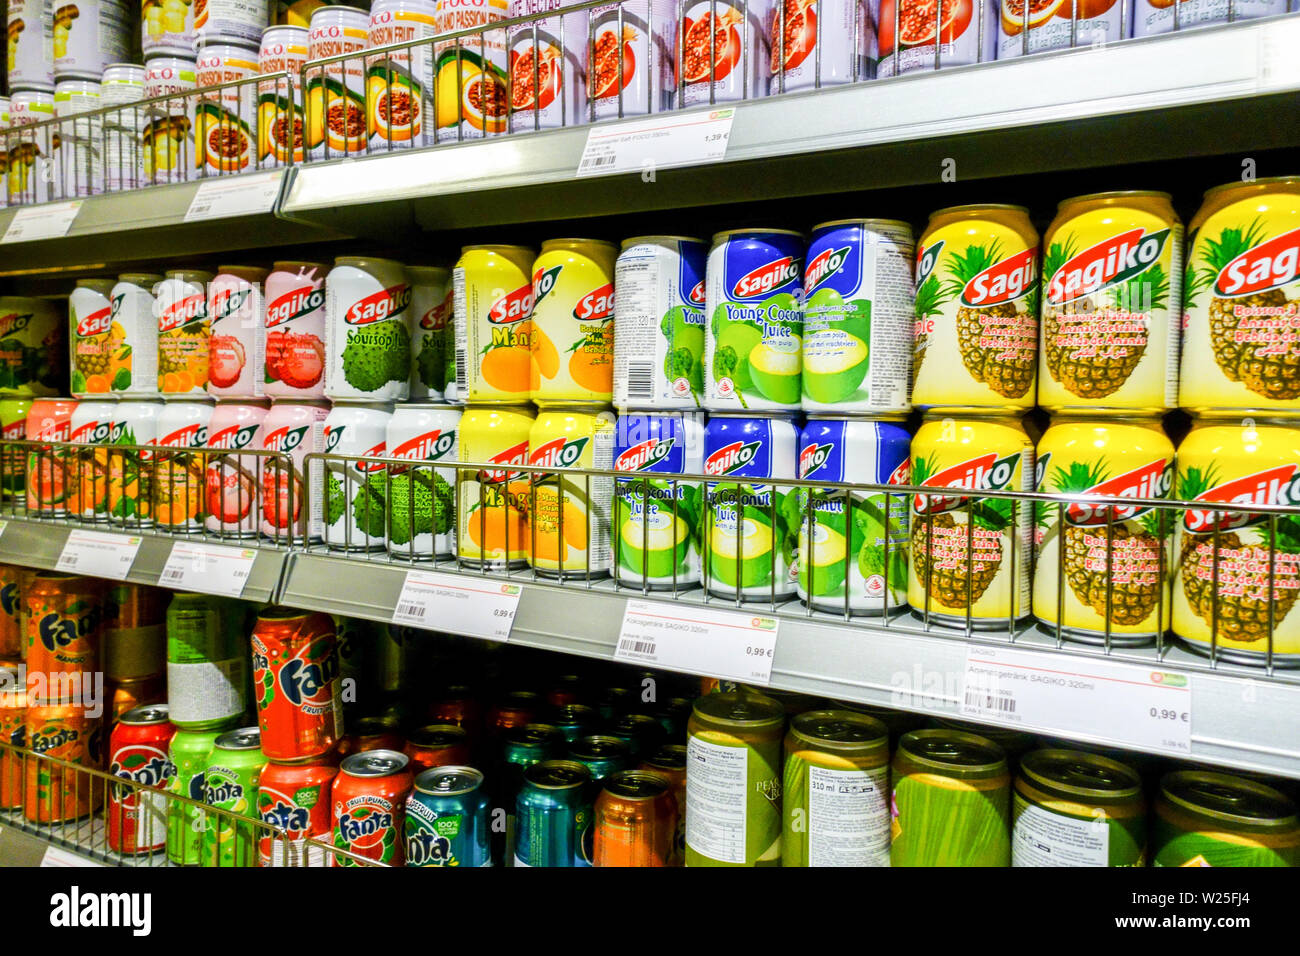 Asiatischen Supermarkt "Go Asia" Regale im Supermarkt, Obst Getränke in Dosen, Dresden, Deutschland Stockfoto